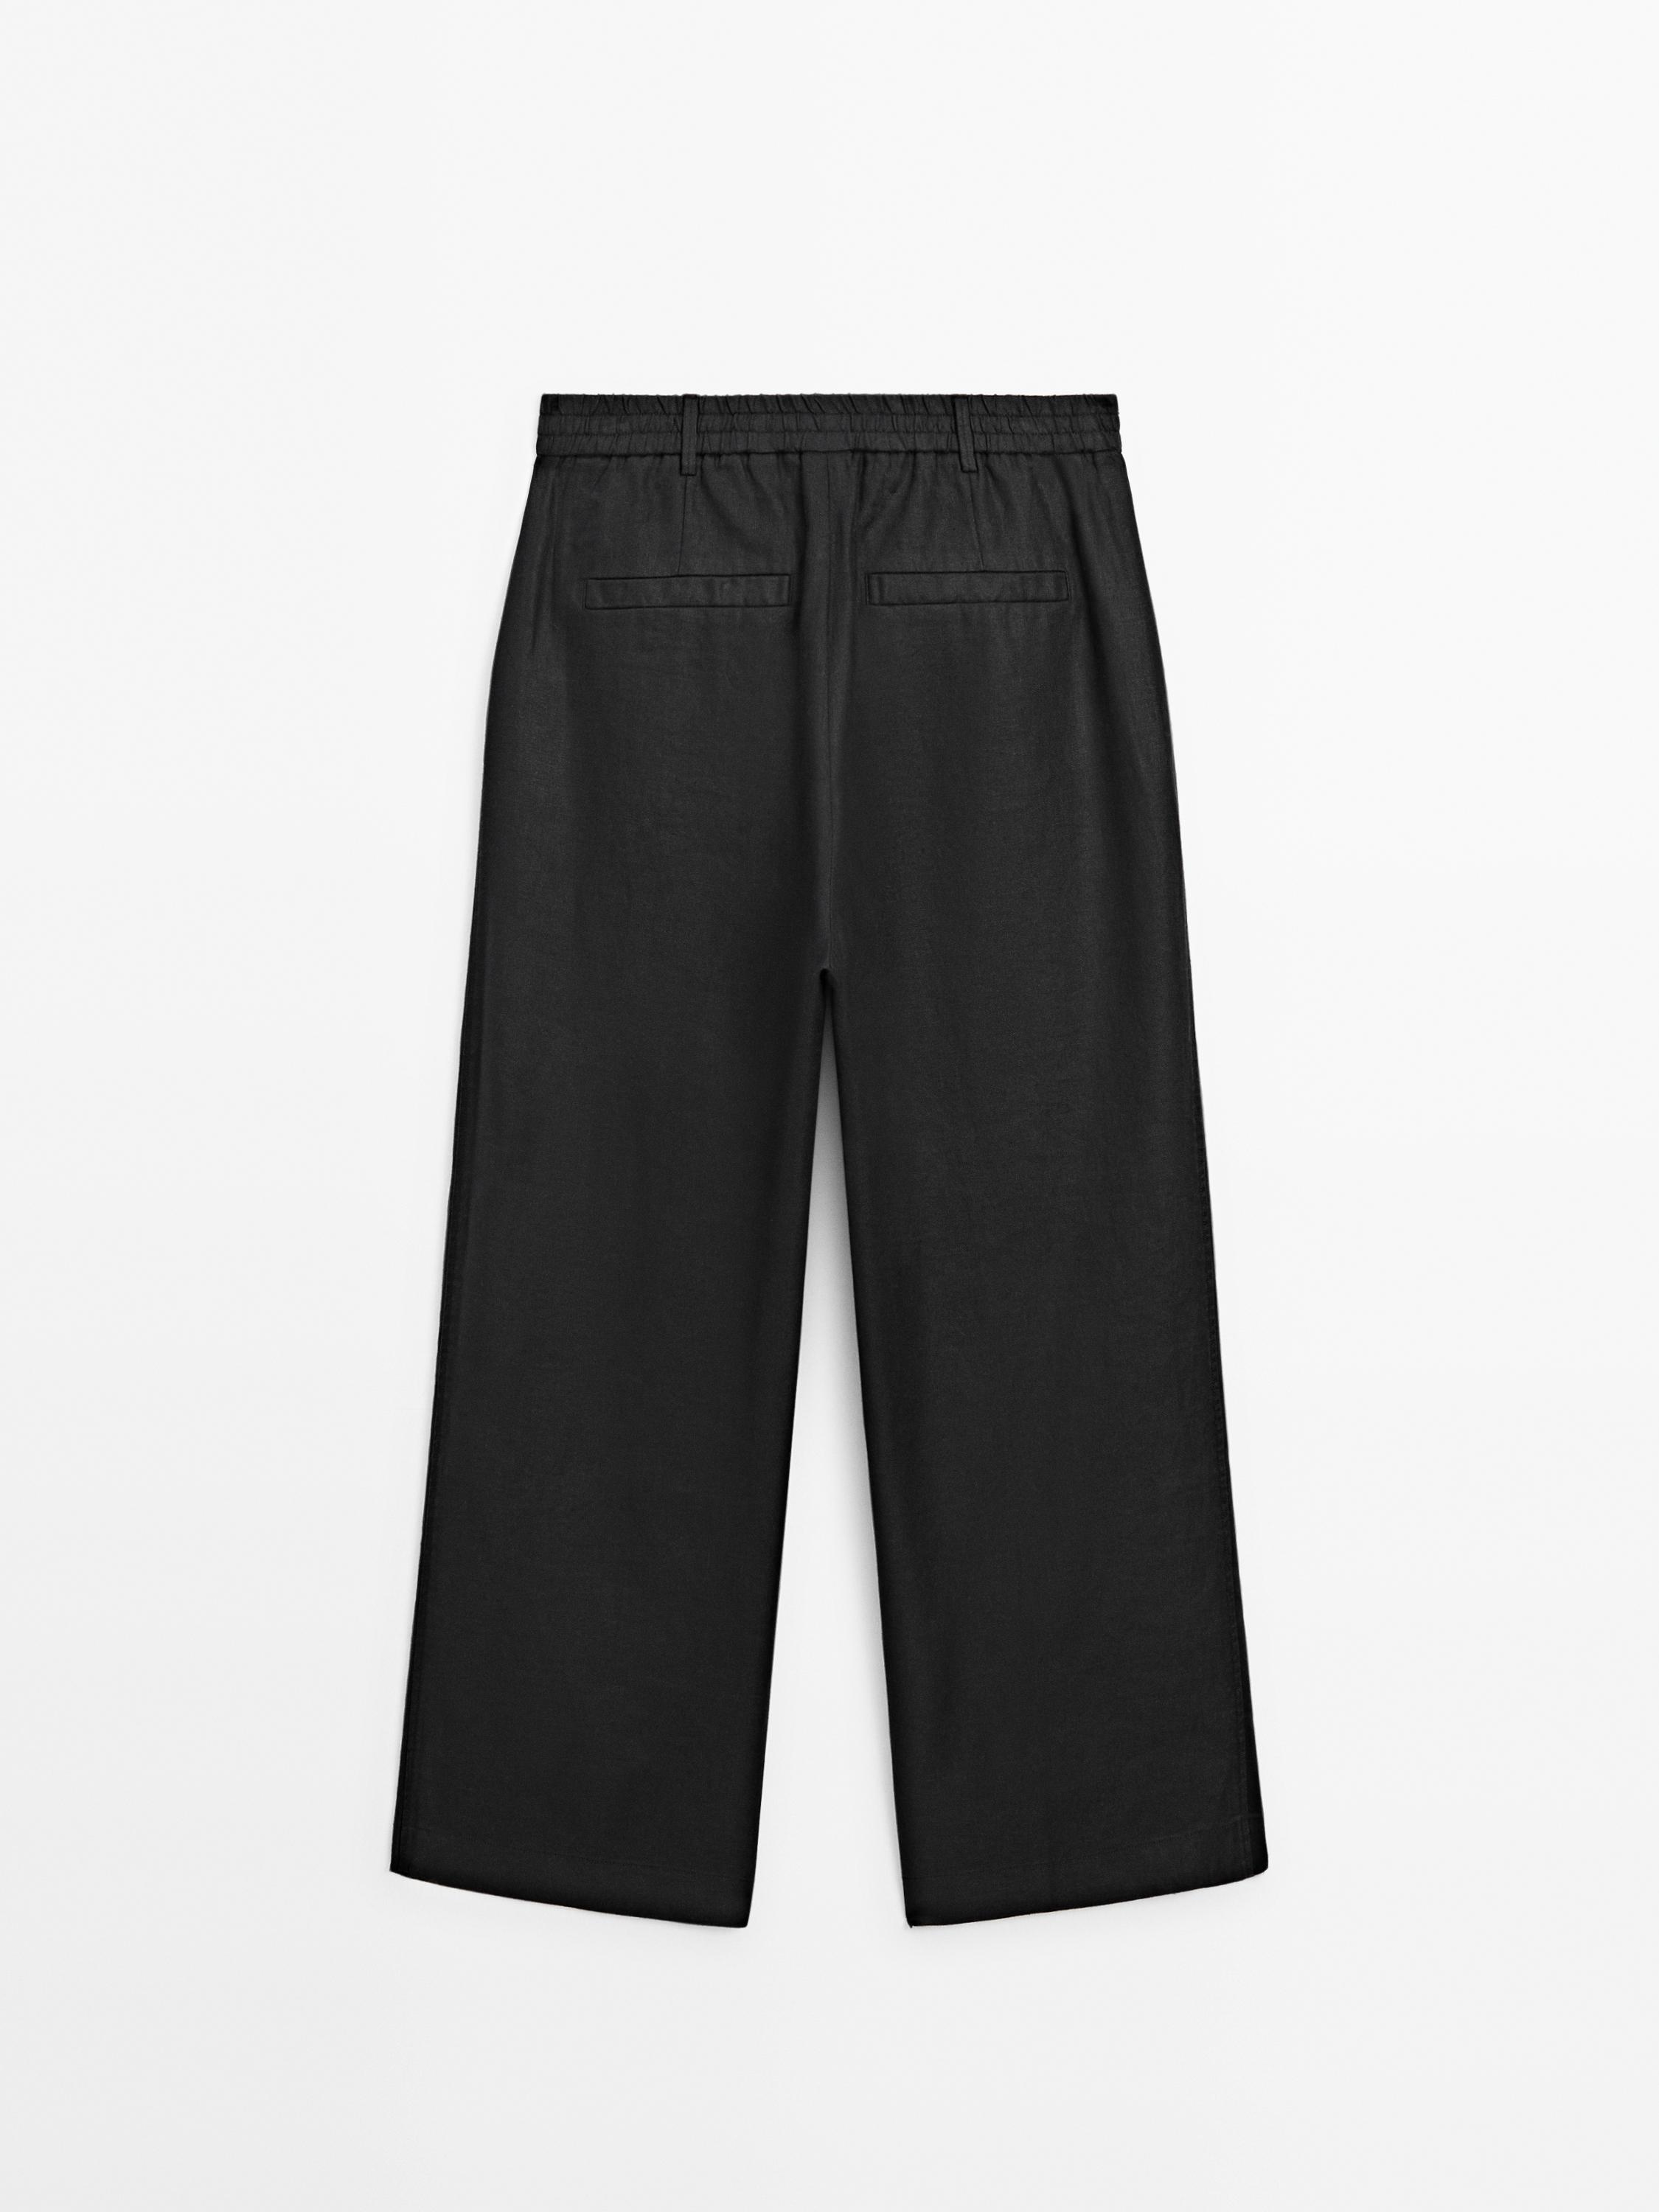 Zara Linen Pants Trousers Pink 3053/270